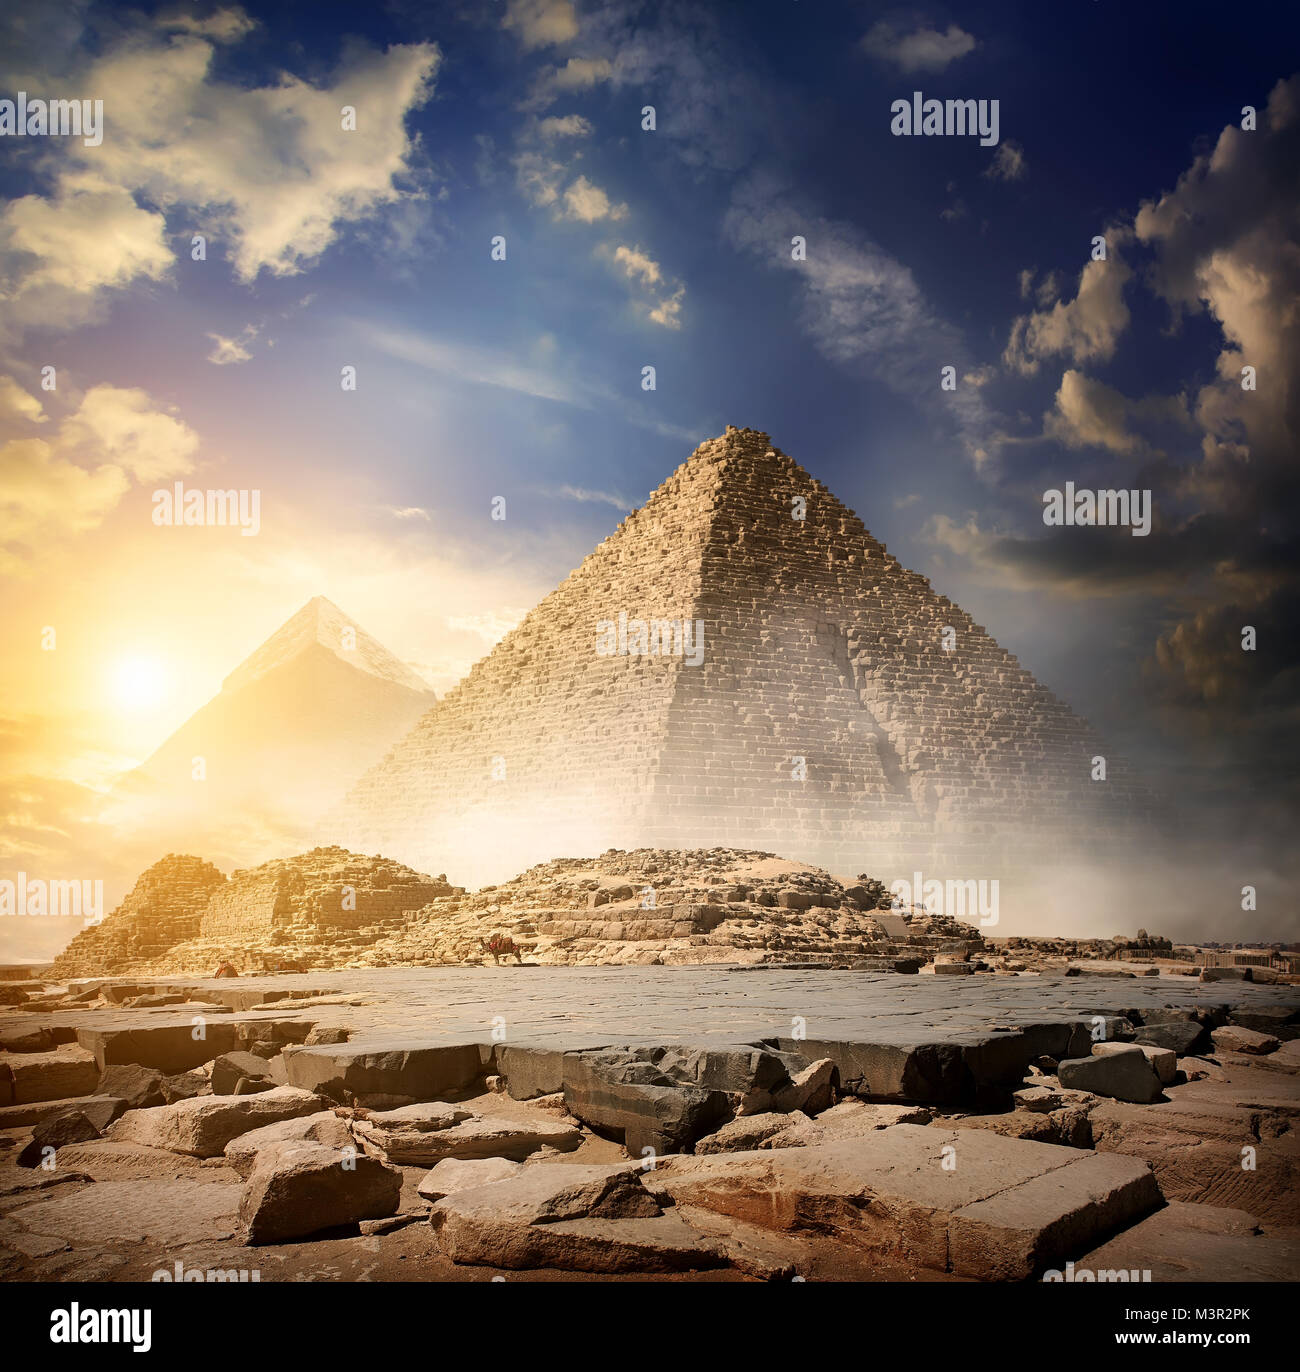 Piramide egizia nel deserto vicino a Giza Foto Stock